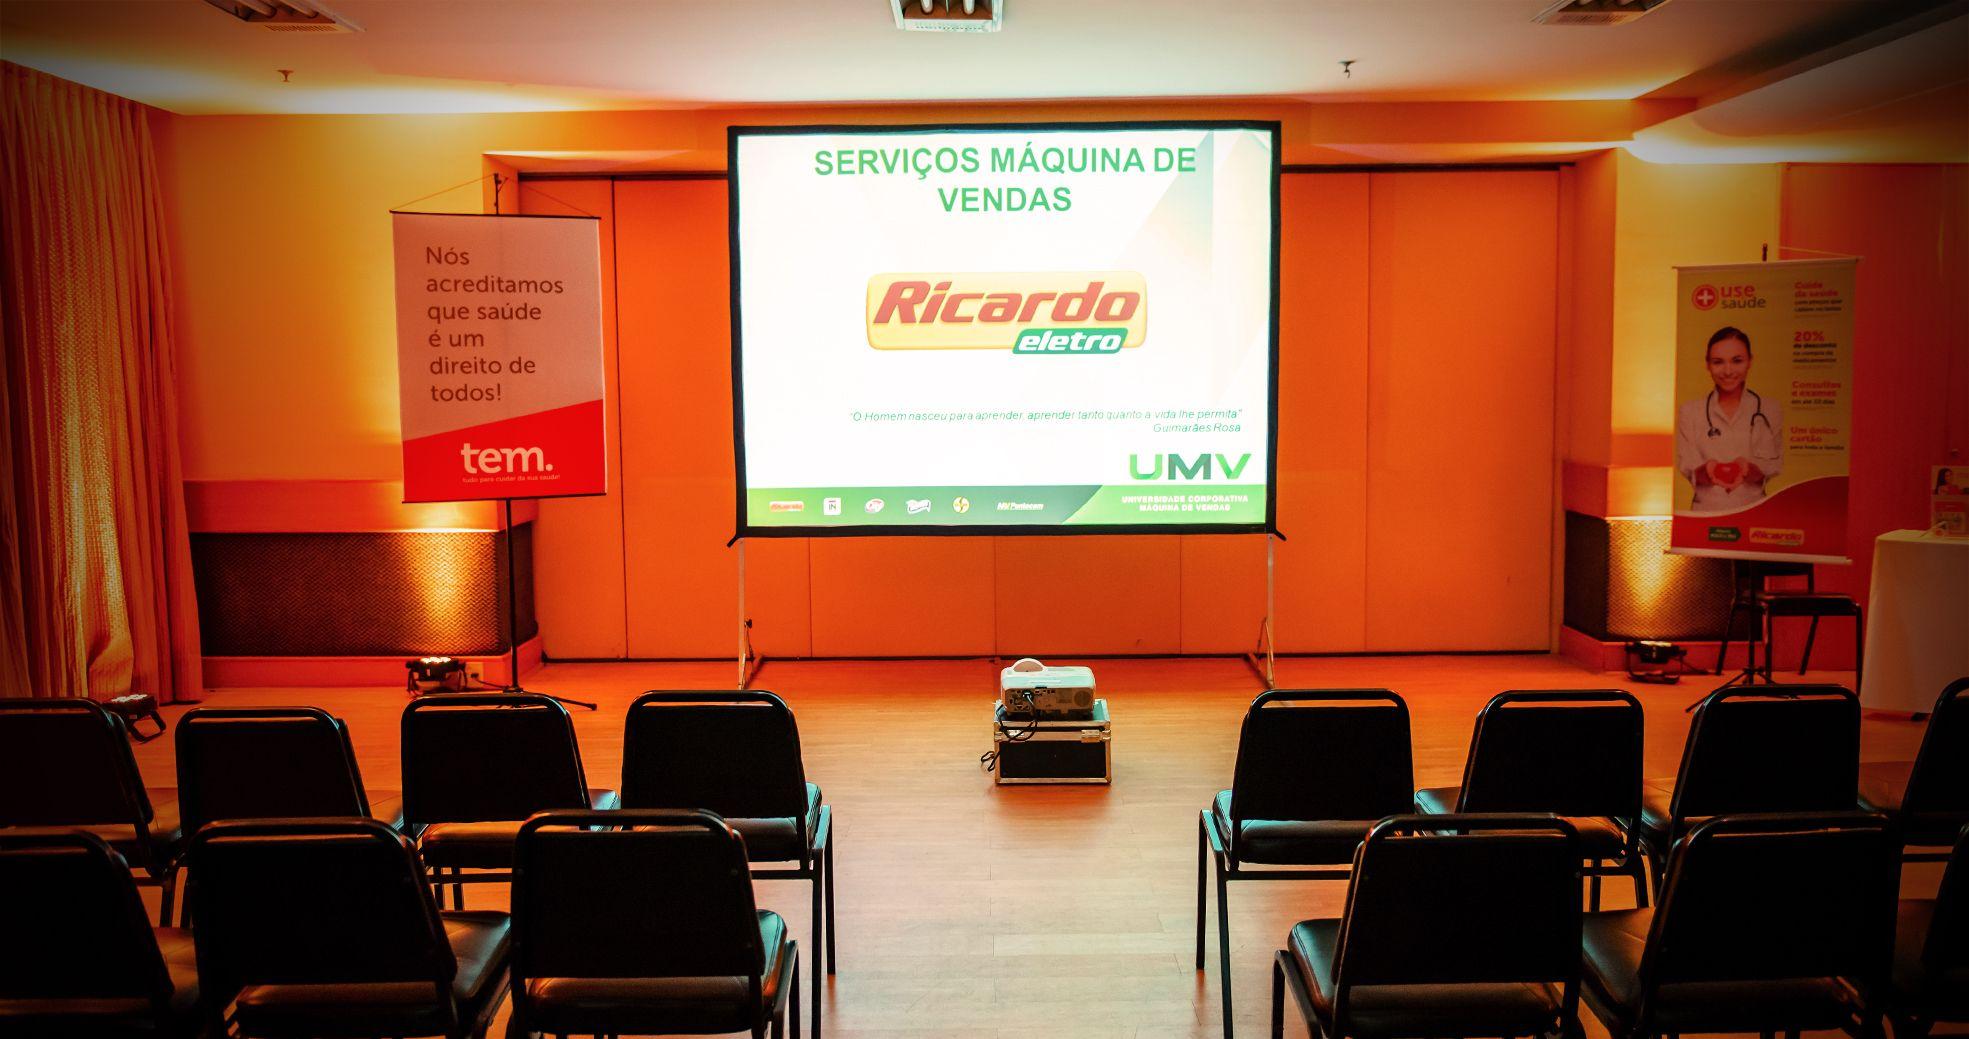 Evento Corporativo - Treinamento Ricardo Eletro - Agência DosReis Livre Marketing